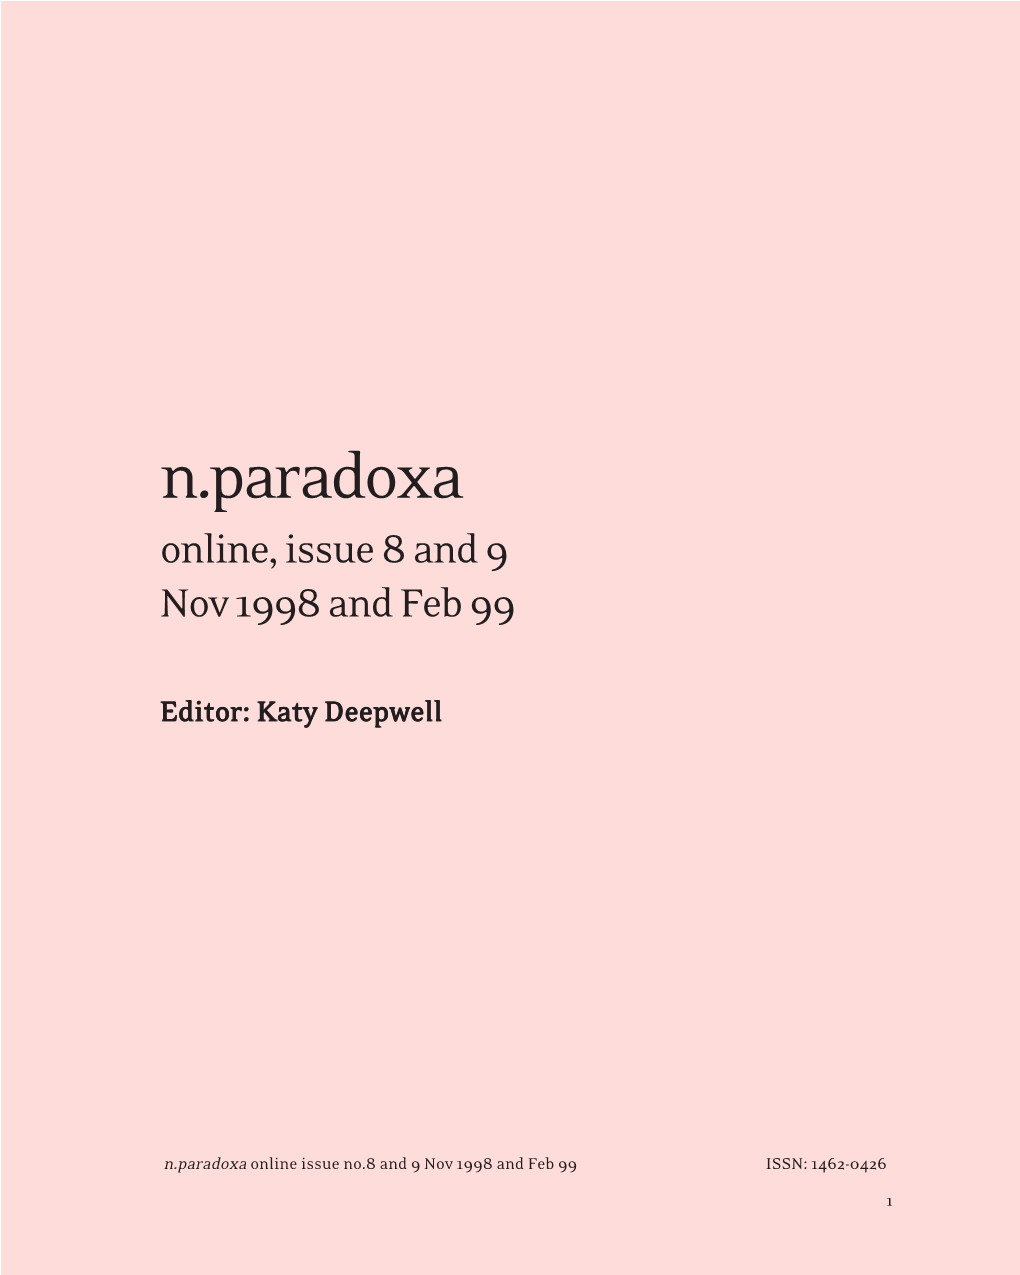 N.Paradoxa Online Issue 8 Nov 1998